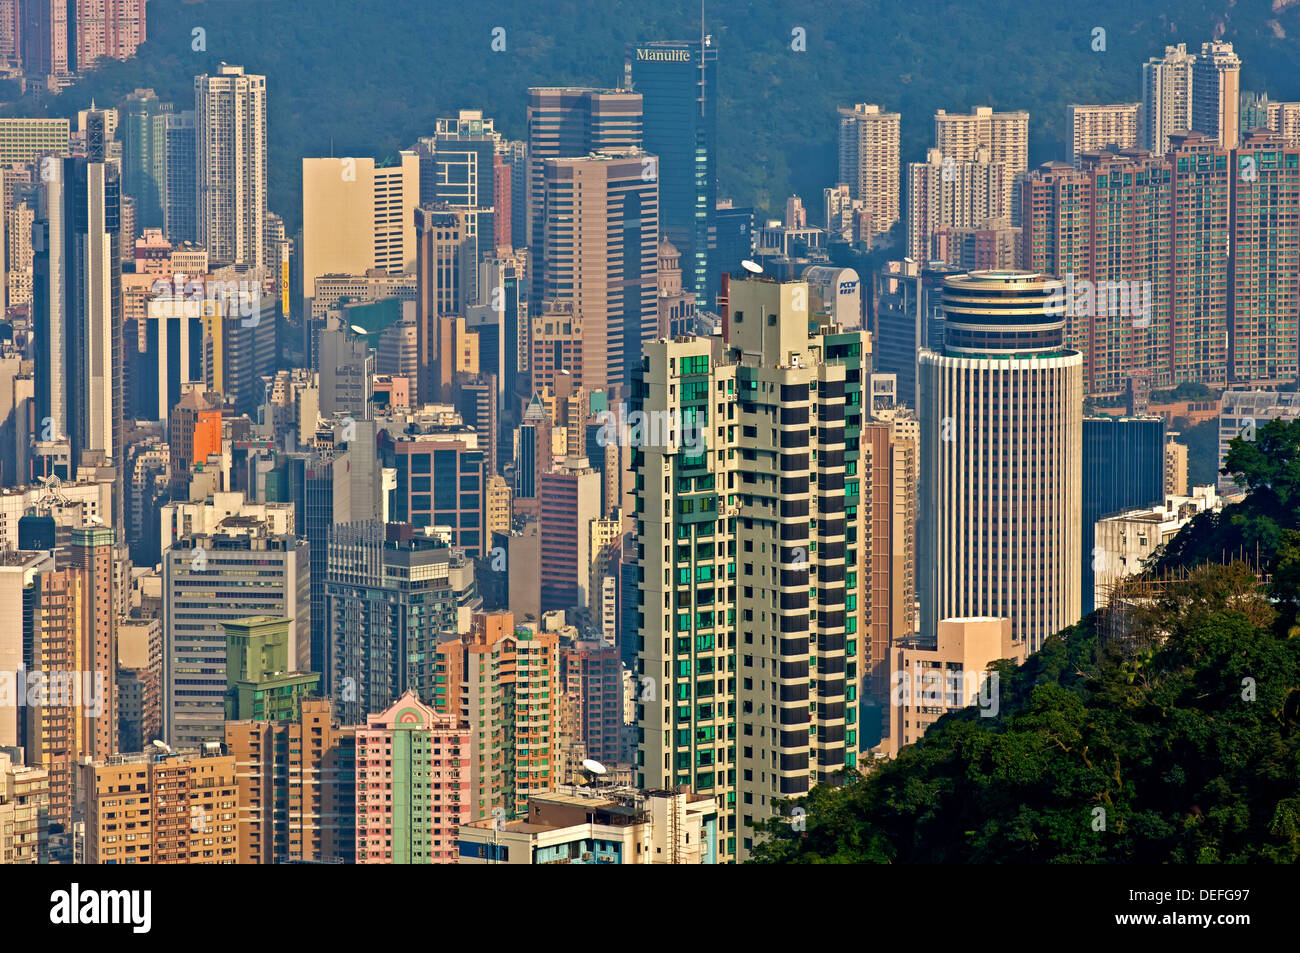 Skyscrapers, sea of houses, Central District, Hong Kong, Hong Kong Island, Hong kong, China, People's Republic of China Stock Photo